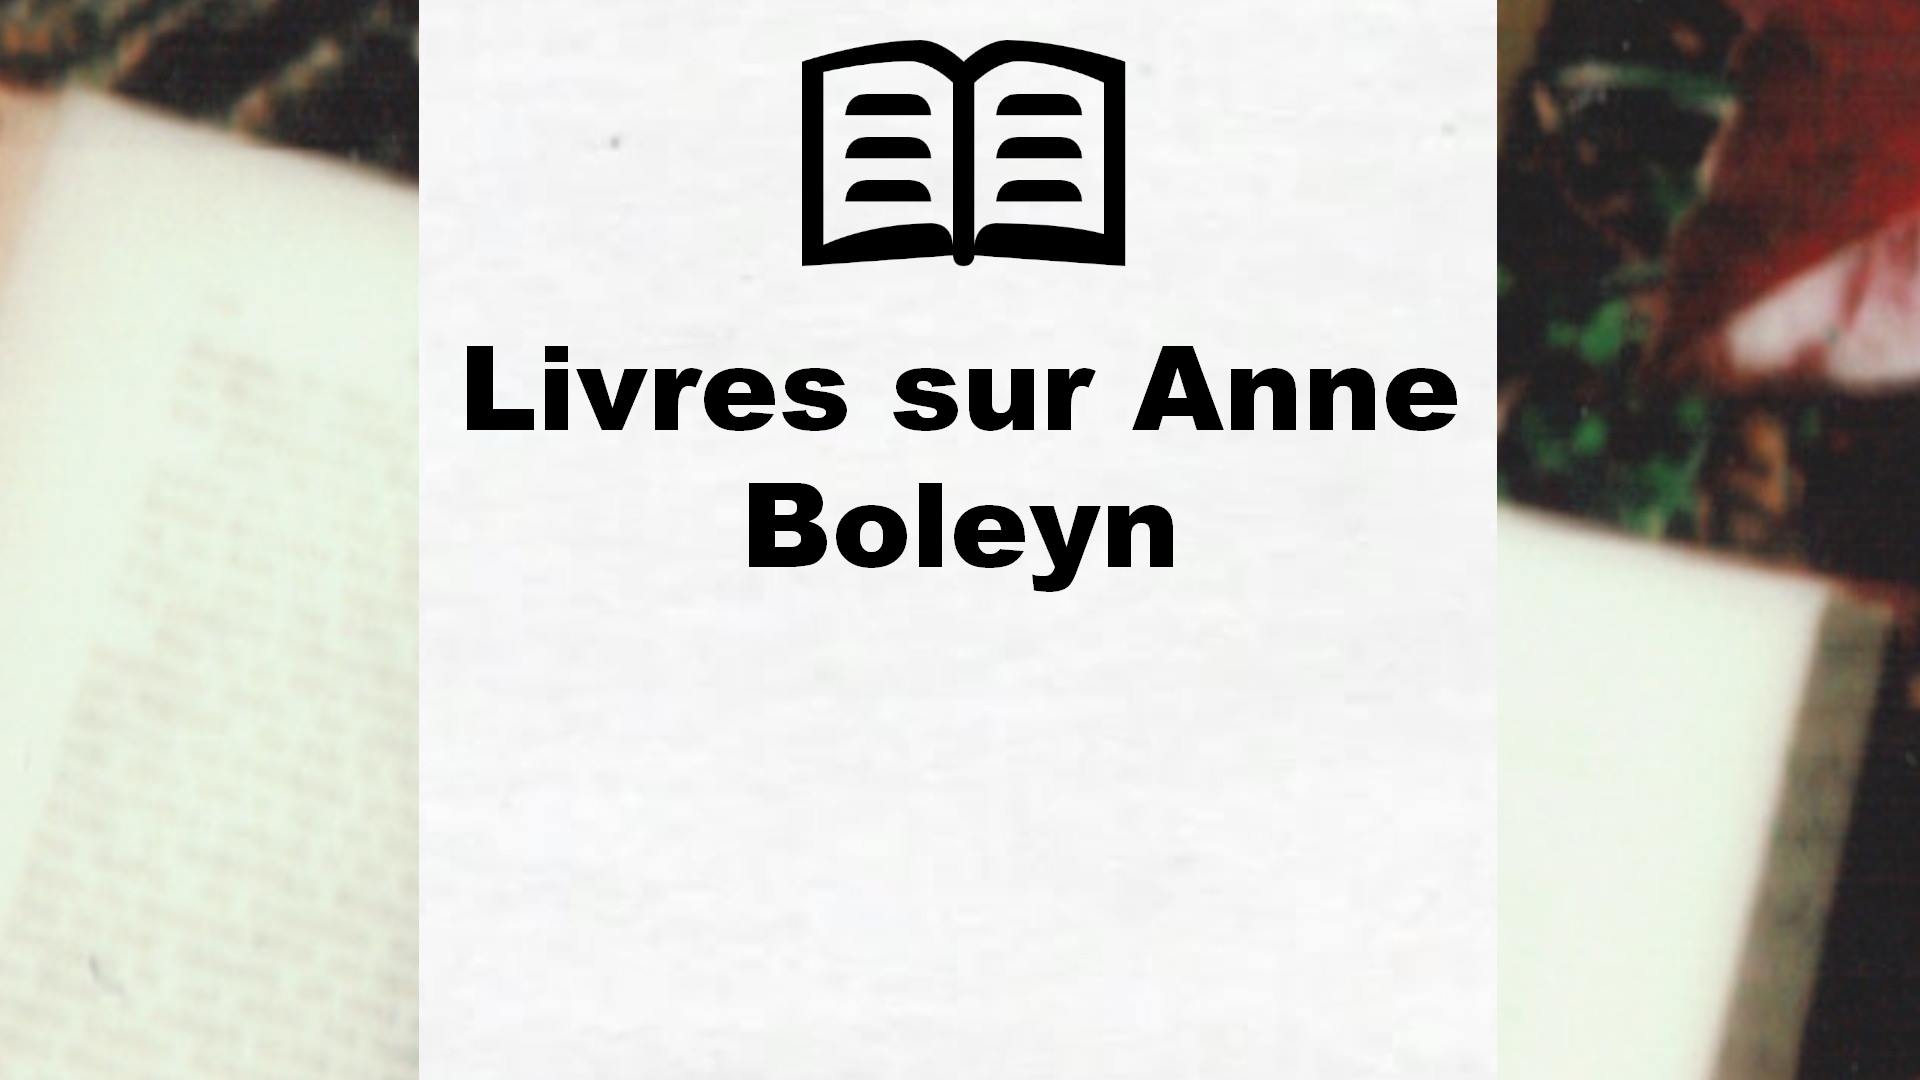 Livres sur Anne Boleyn